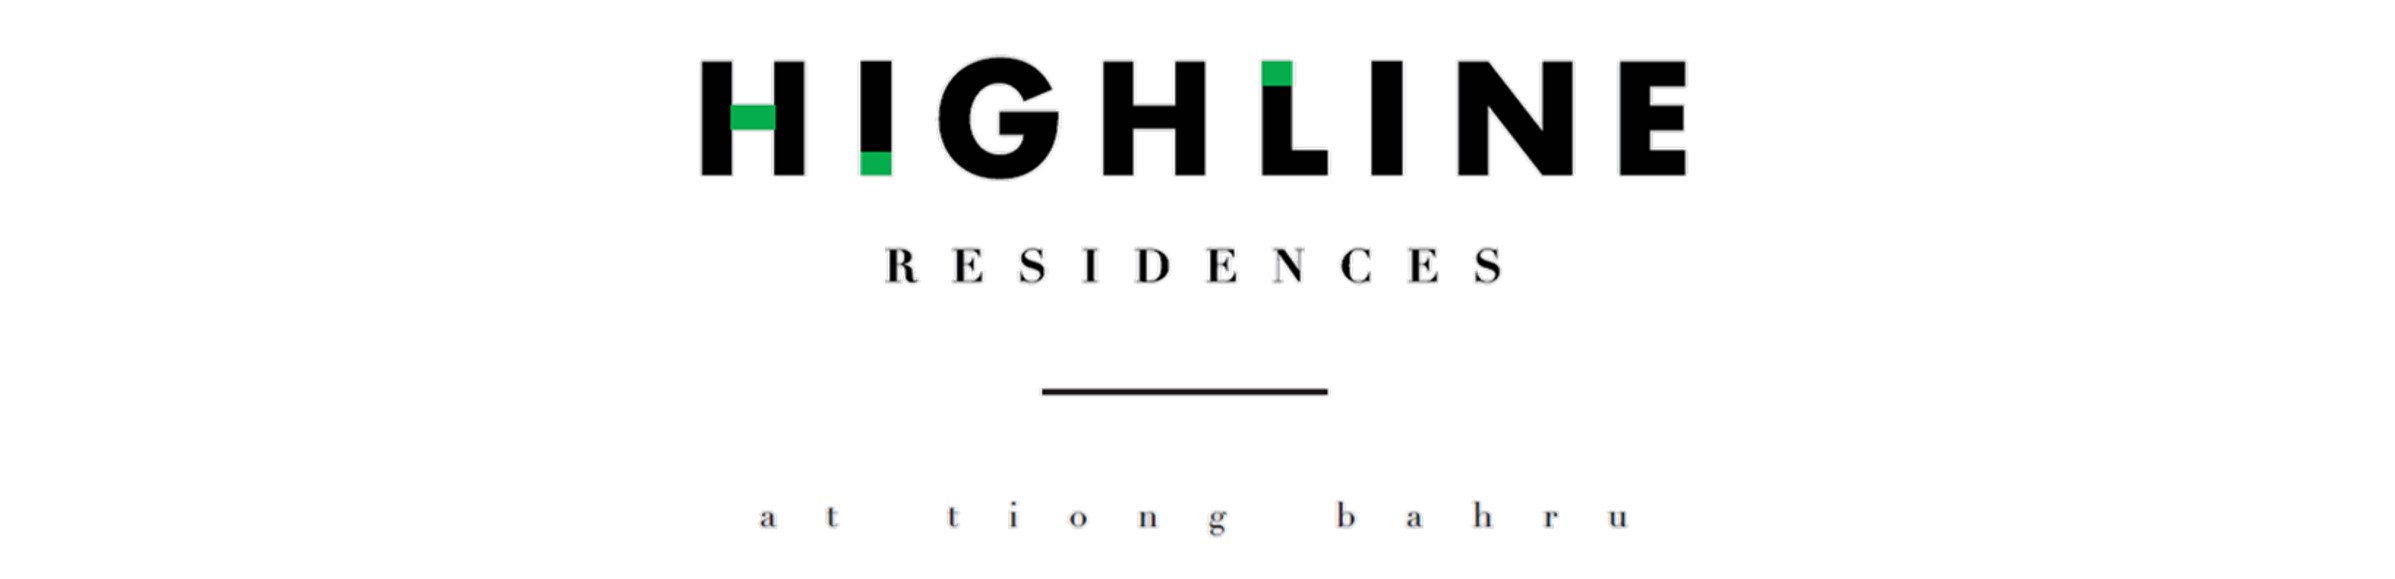 Highline_Residences